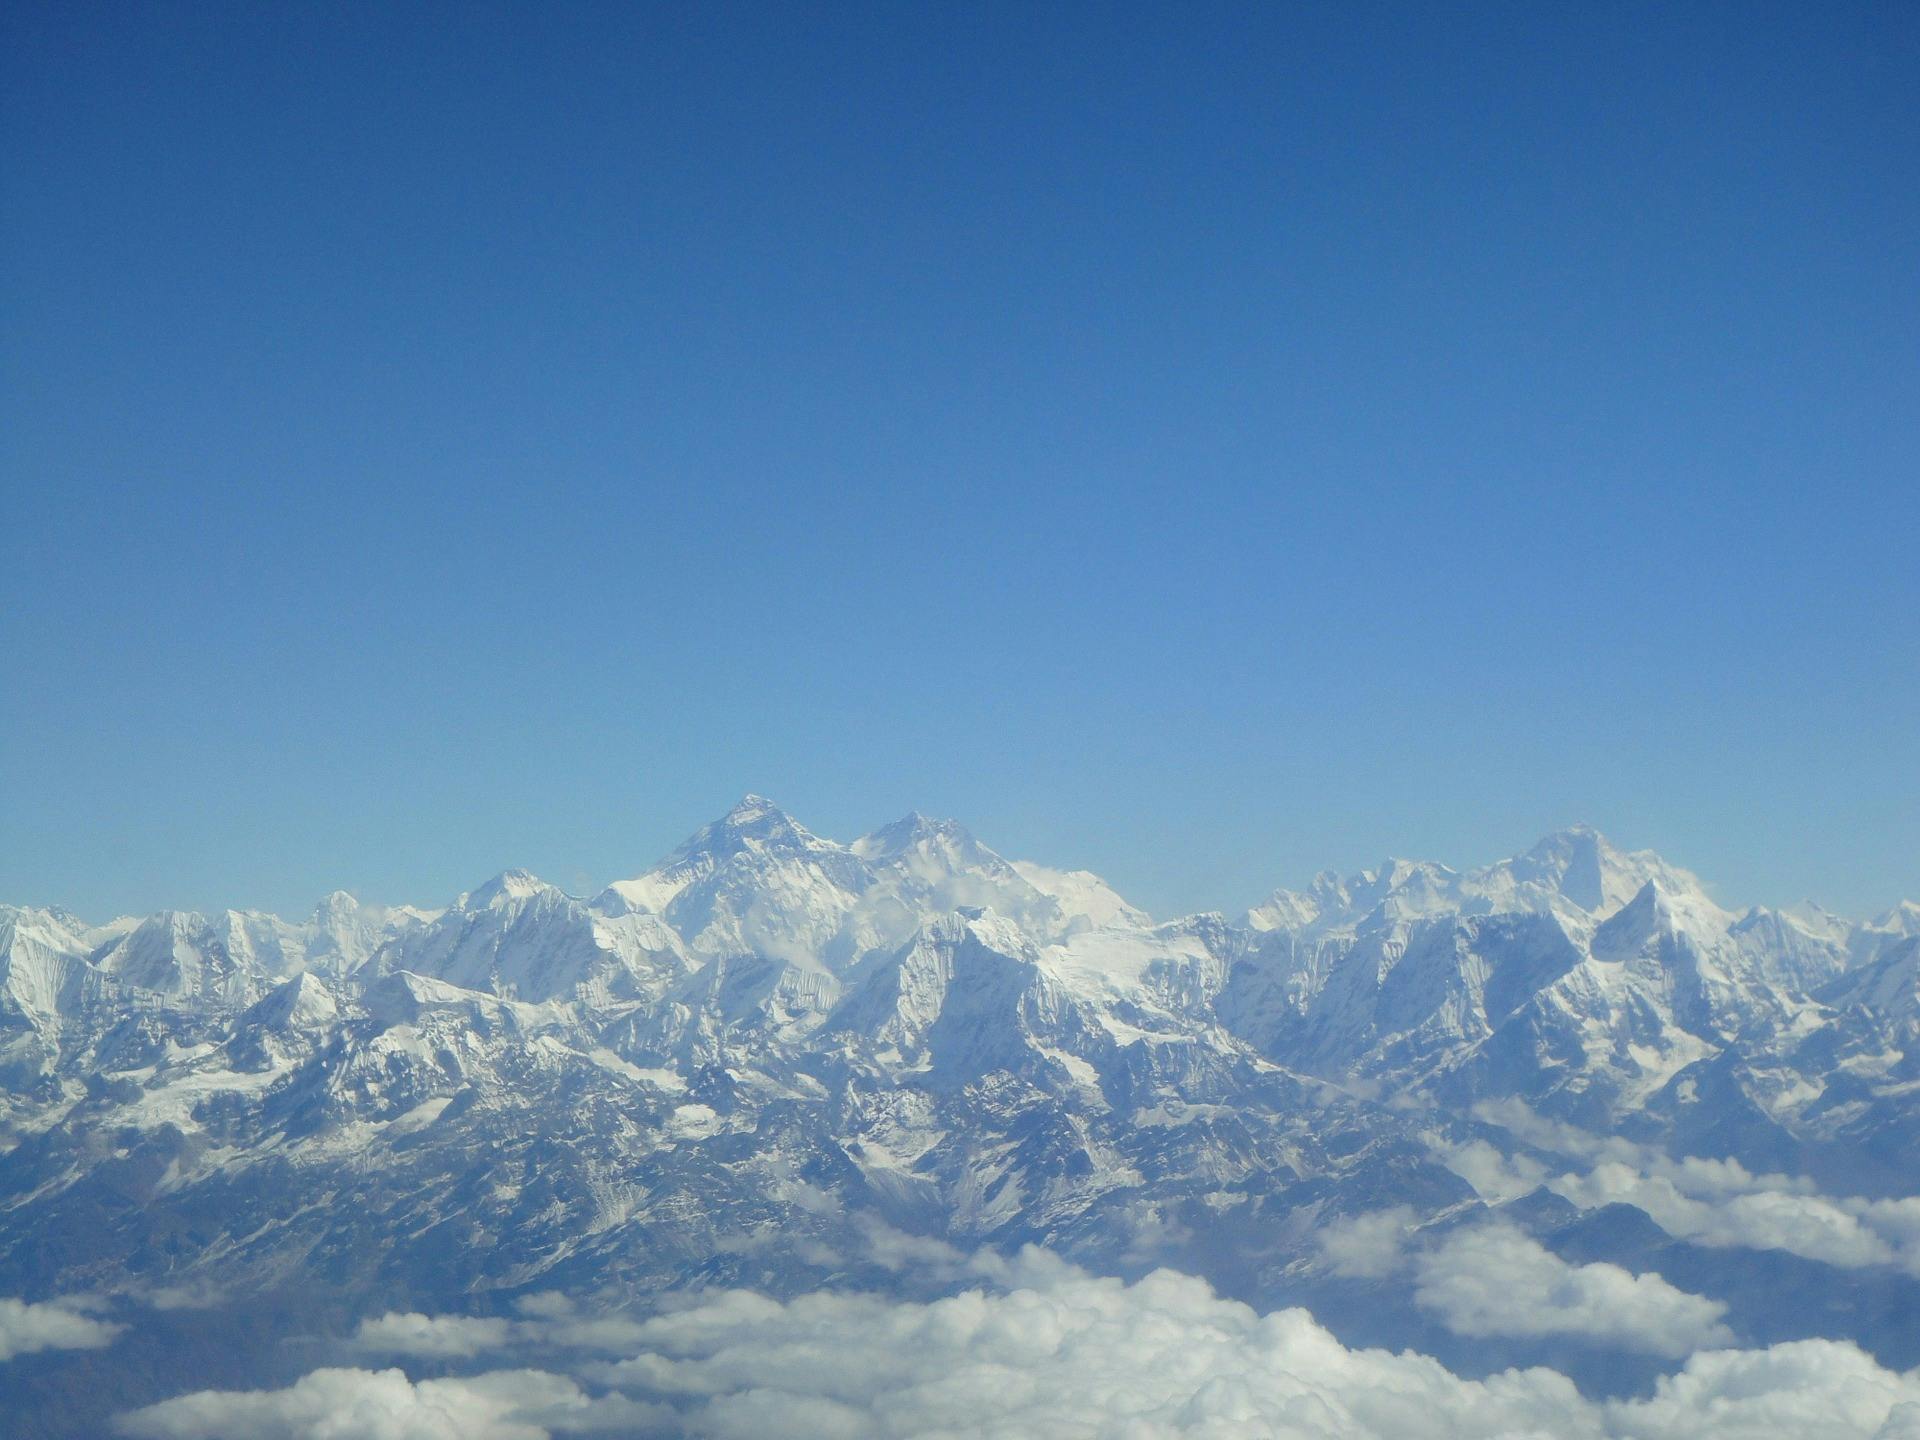 Glacier in Nepal